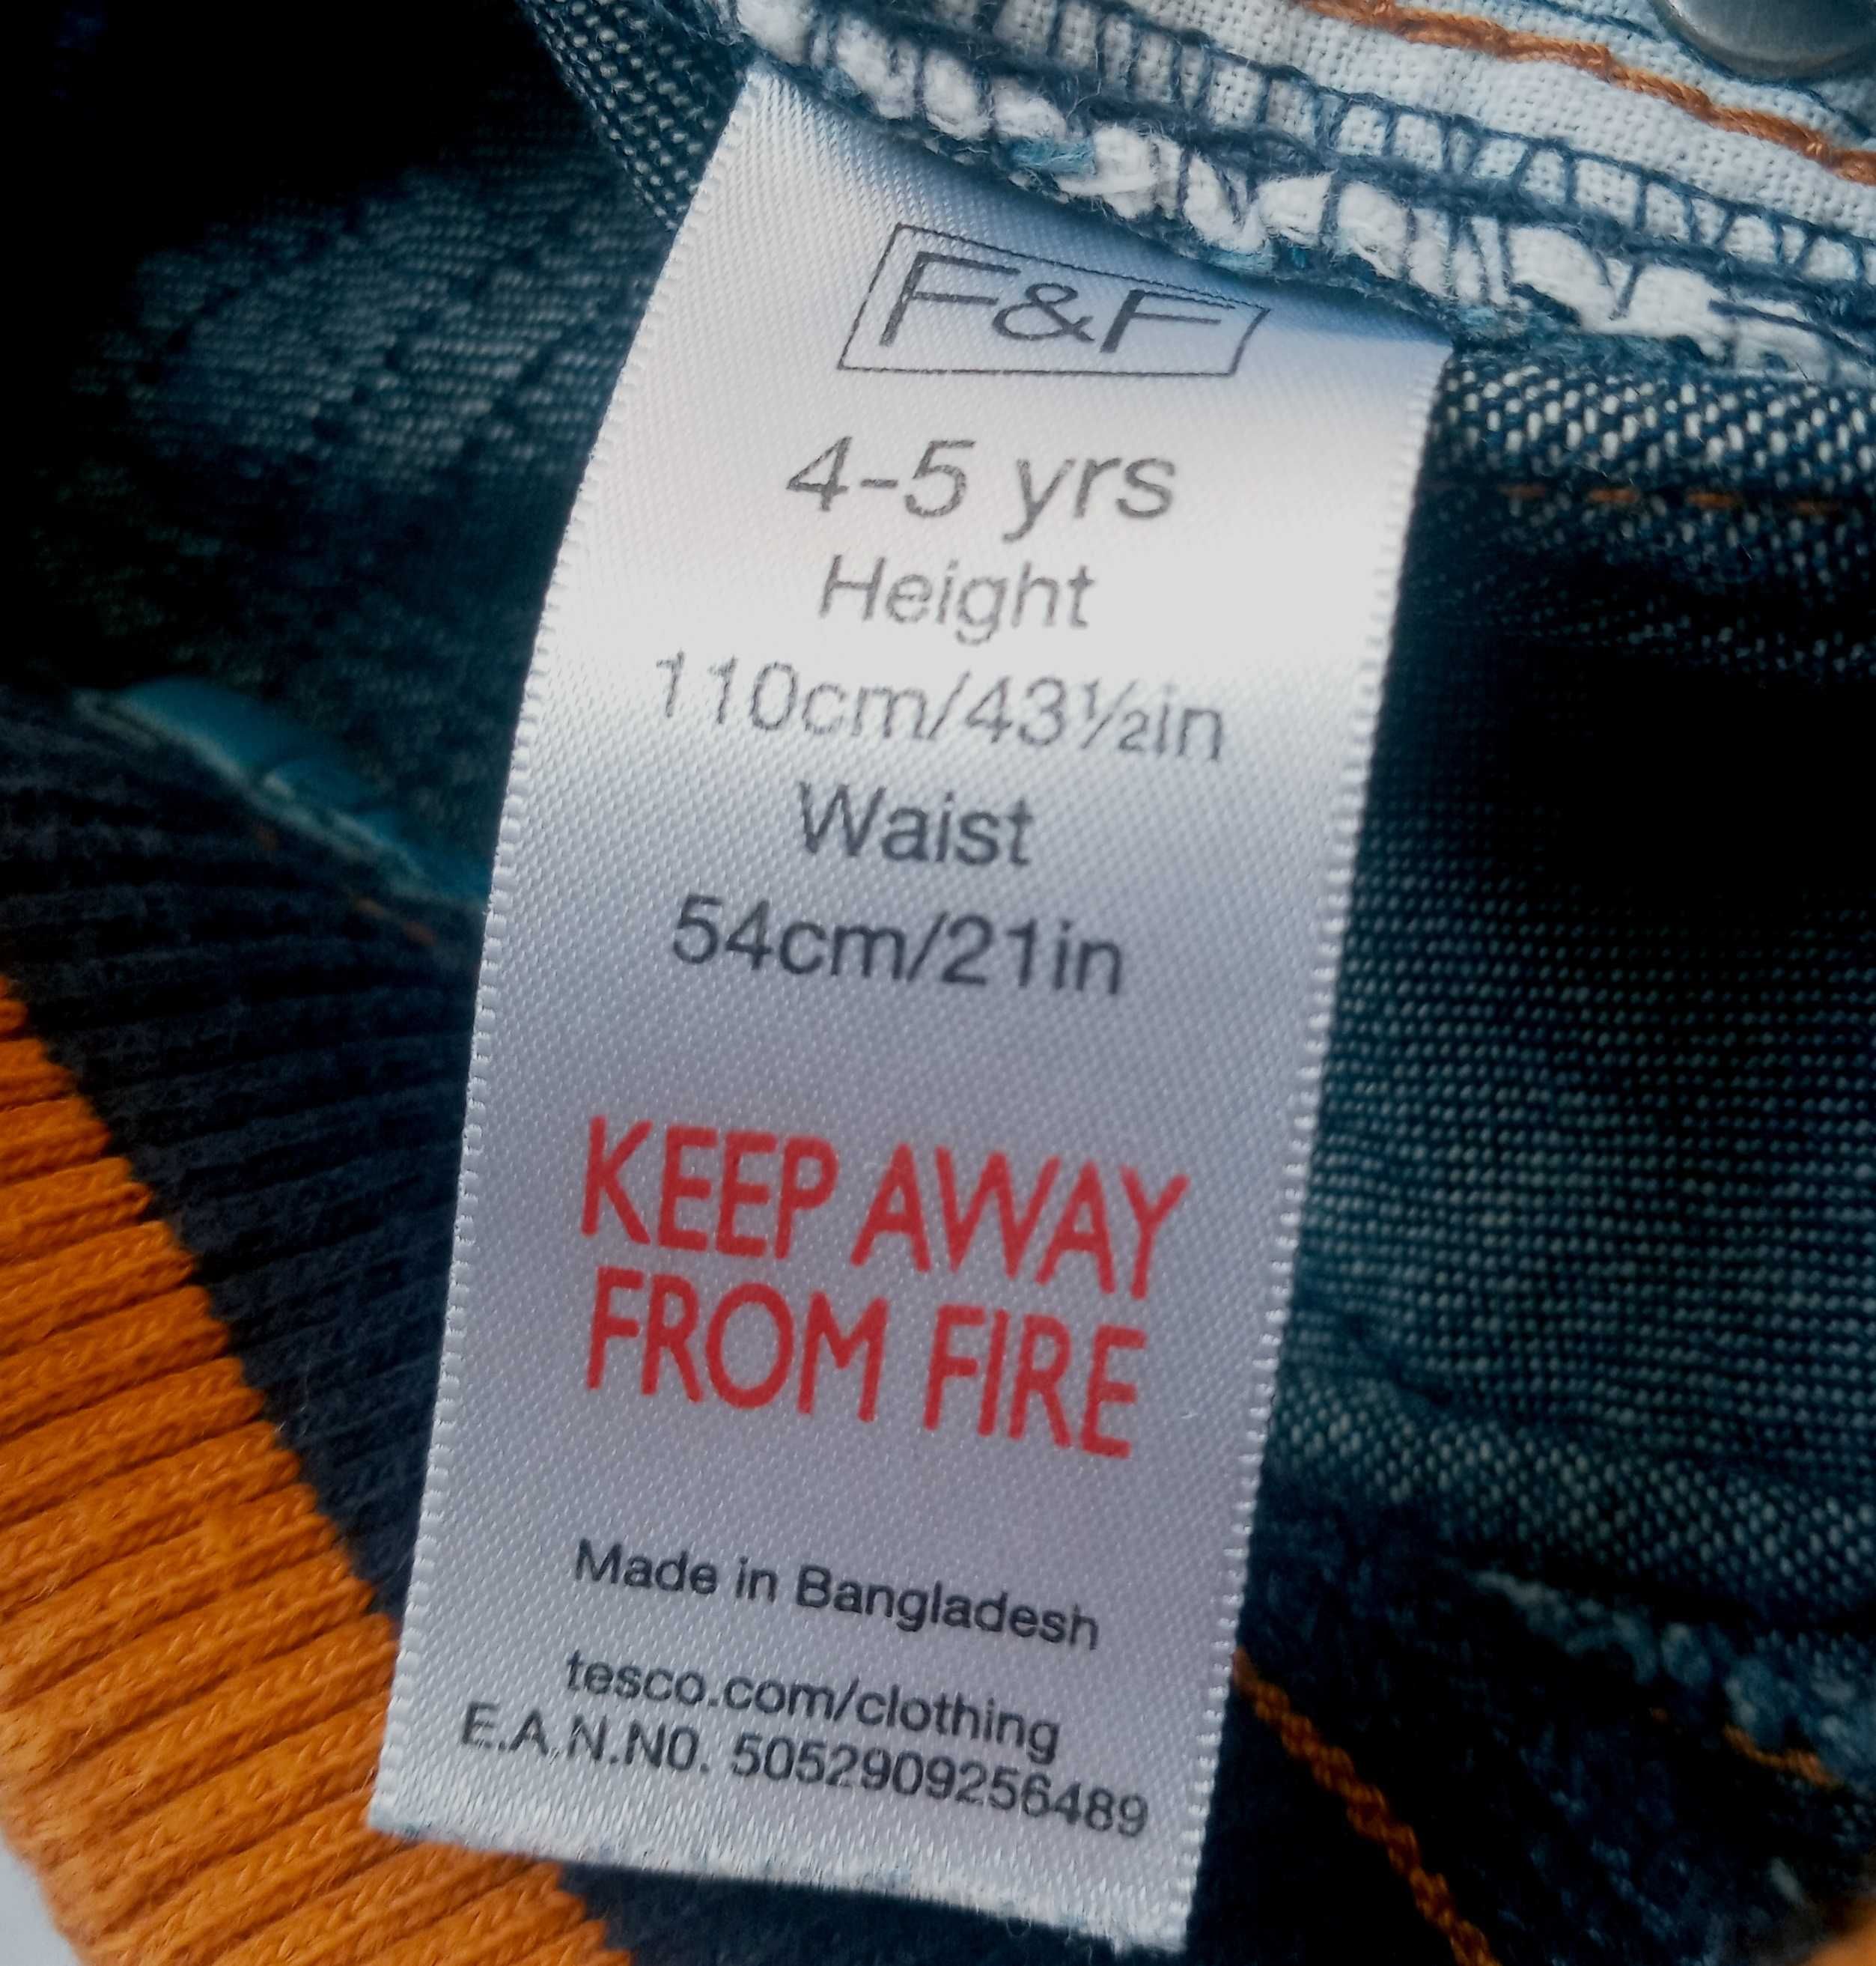 F&F granatowe szerokie jeansy na gumce 4 - 5 lat 110 cm